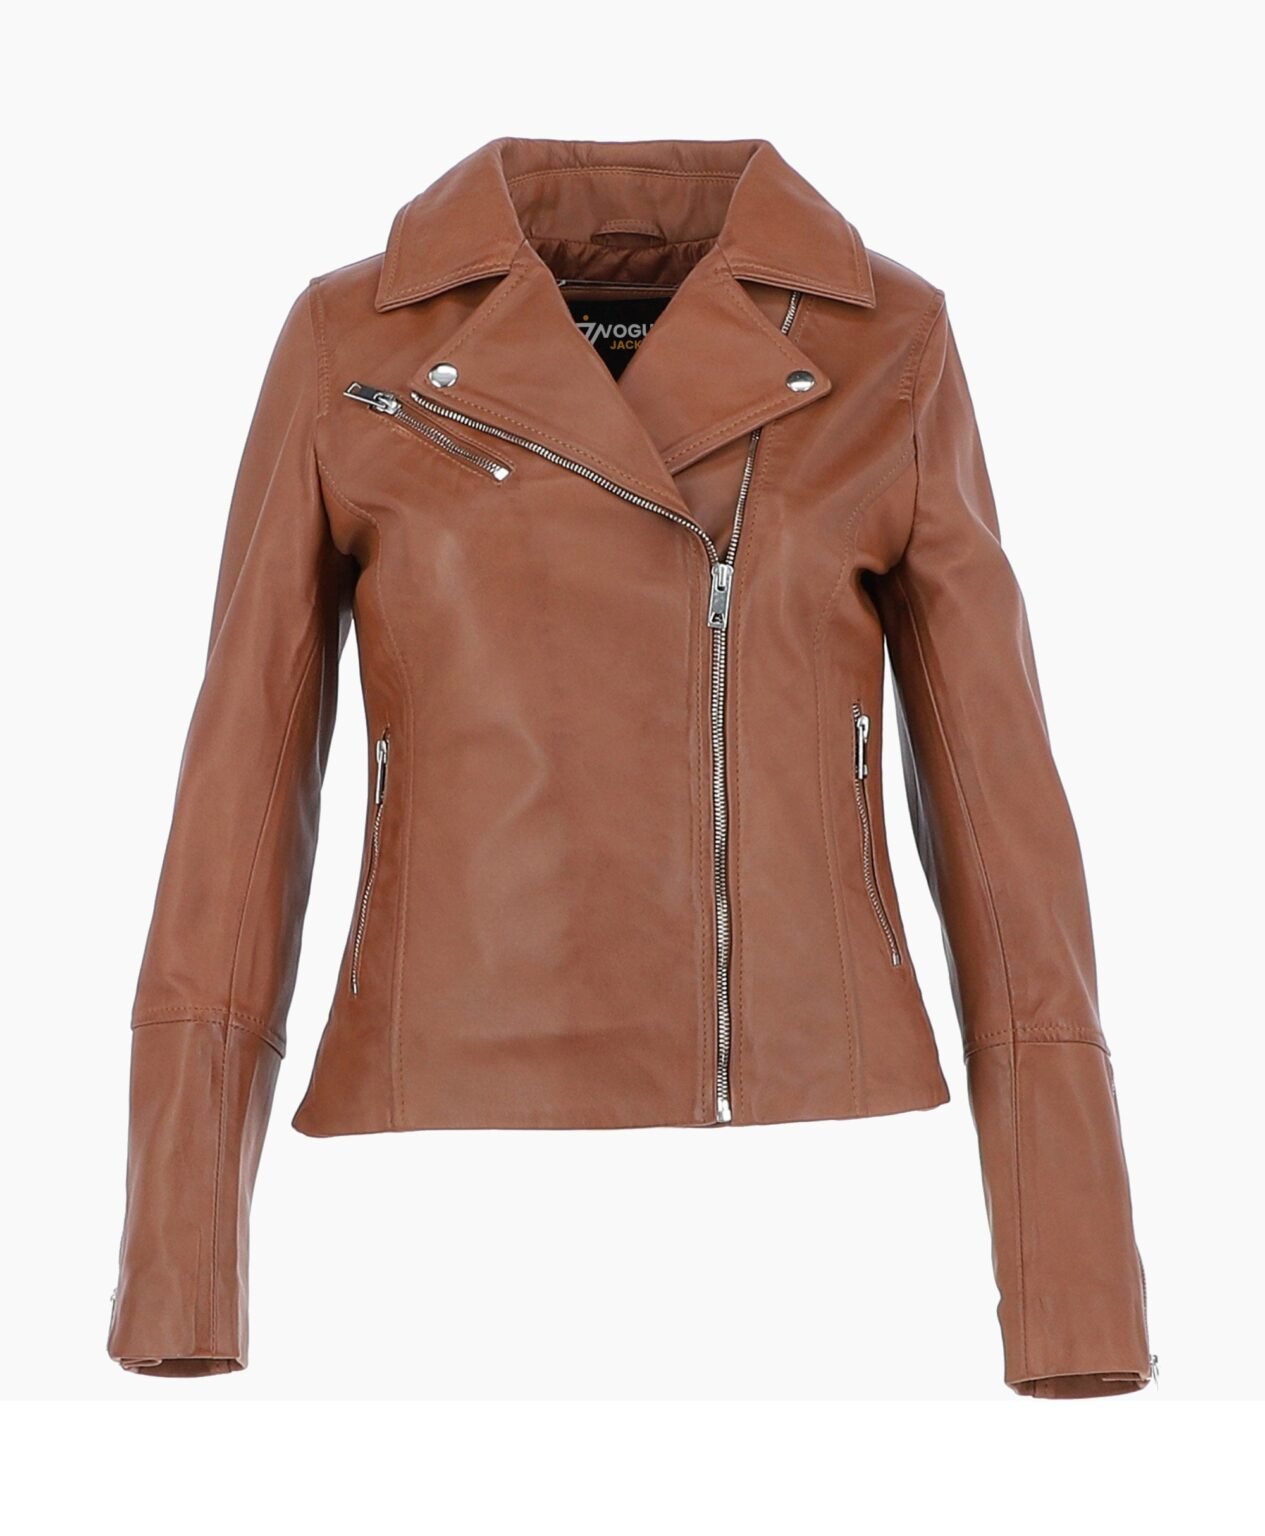 vogue-jacket-leather-biker-jacket-tan-greeley-image200